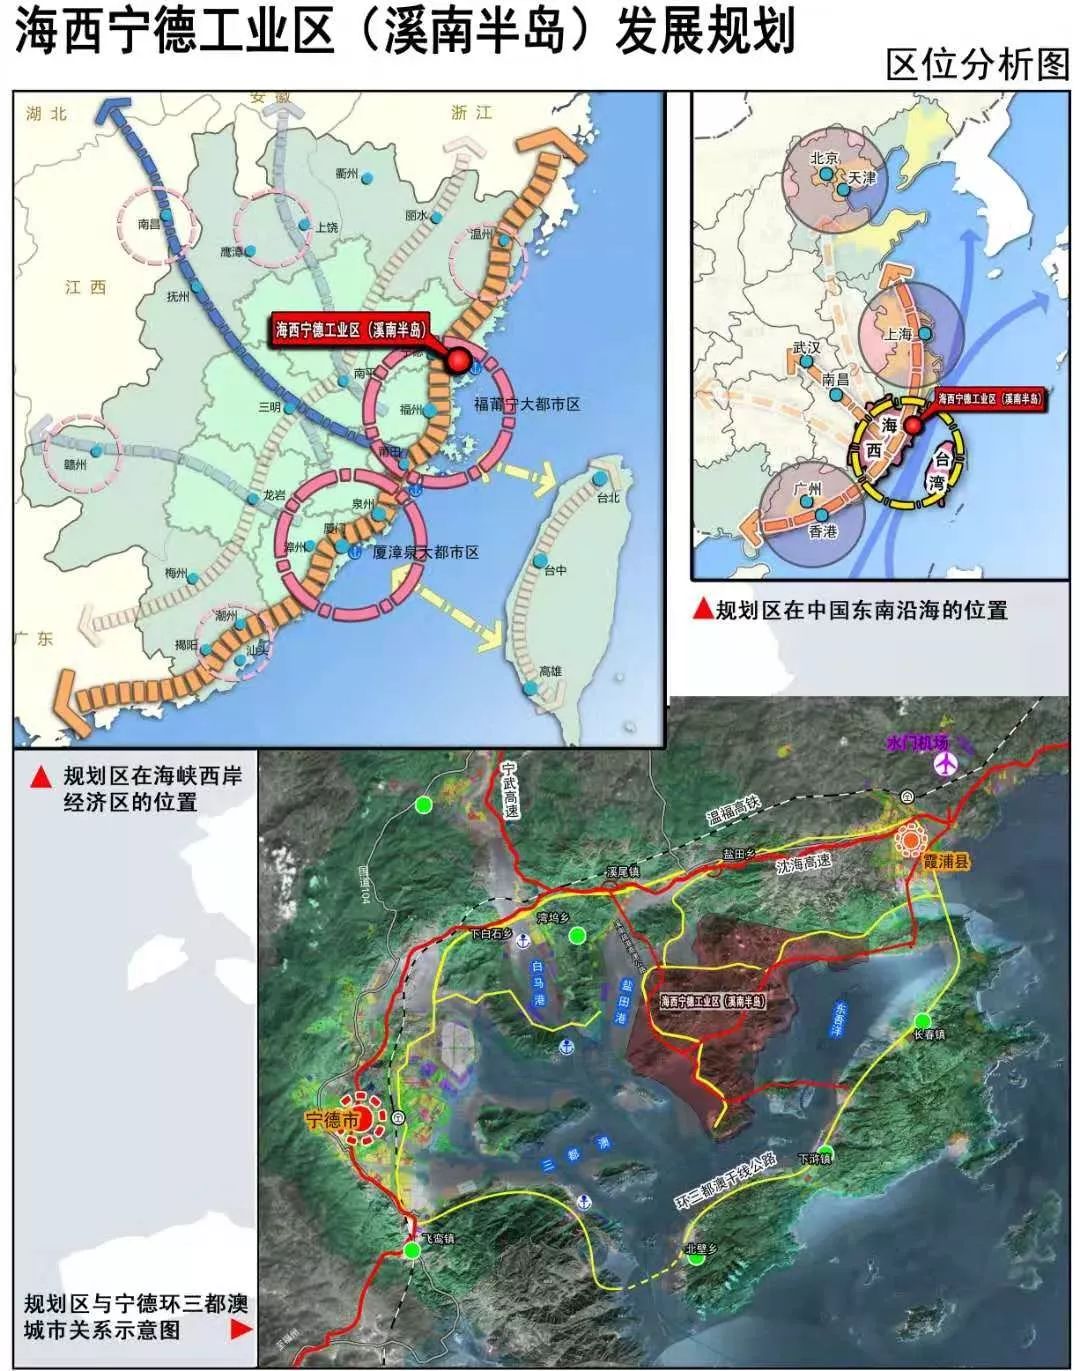 溪南半岛开发快速推进霞浦这三个乡镇将有大发展